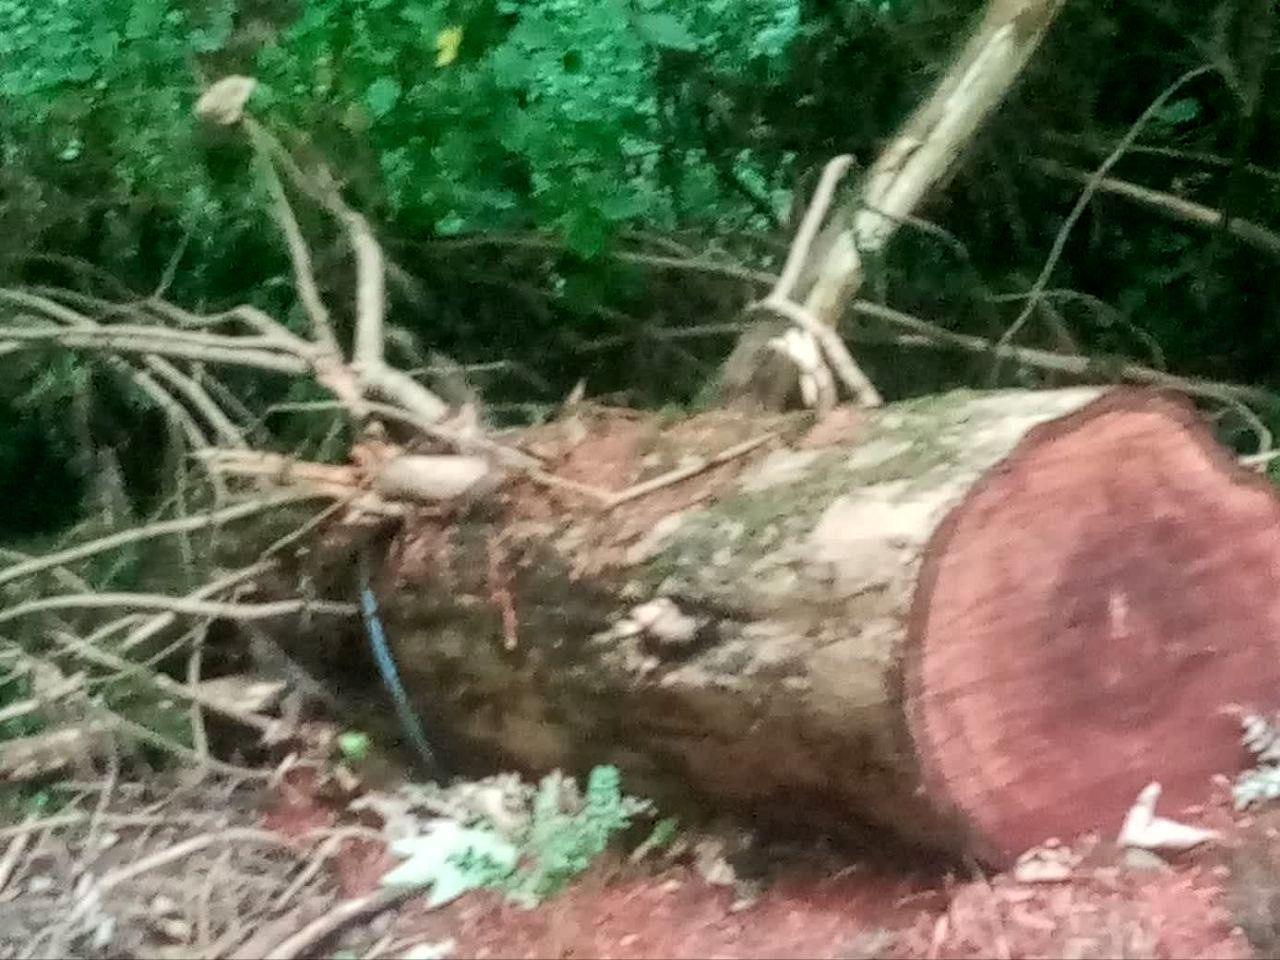  درخت در حال انقراض گرگان را قطع کردند!